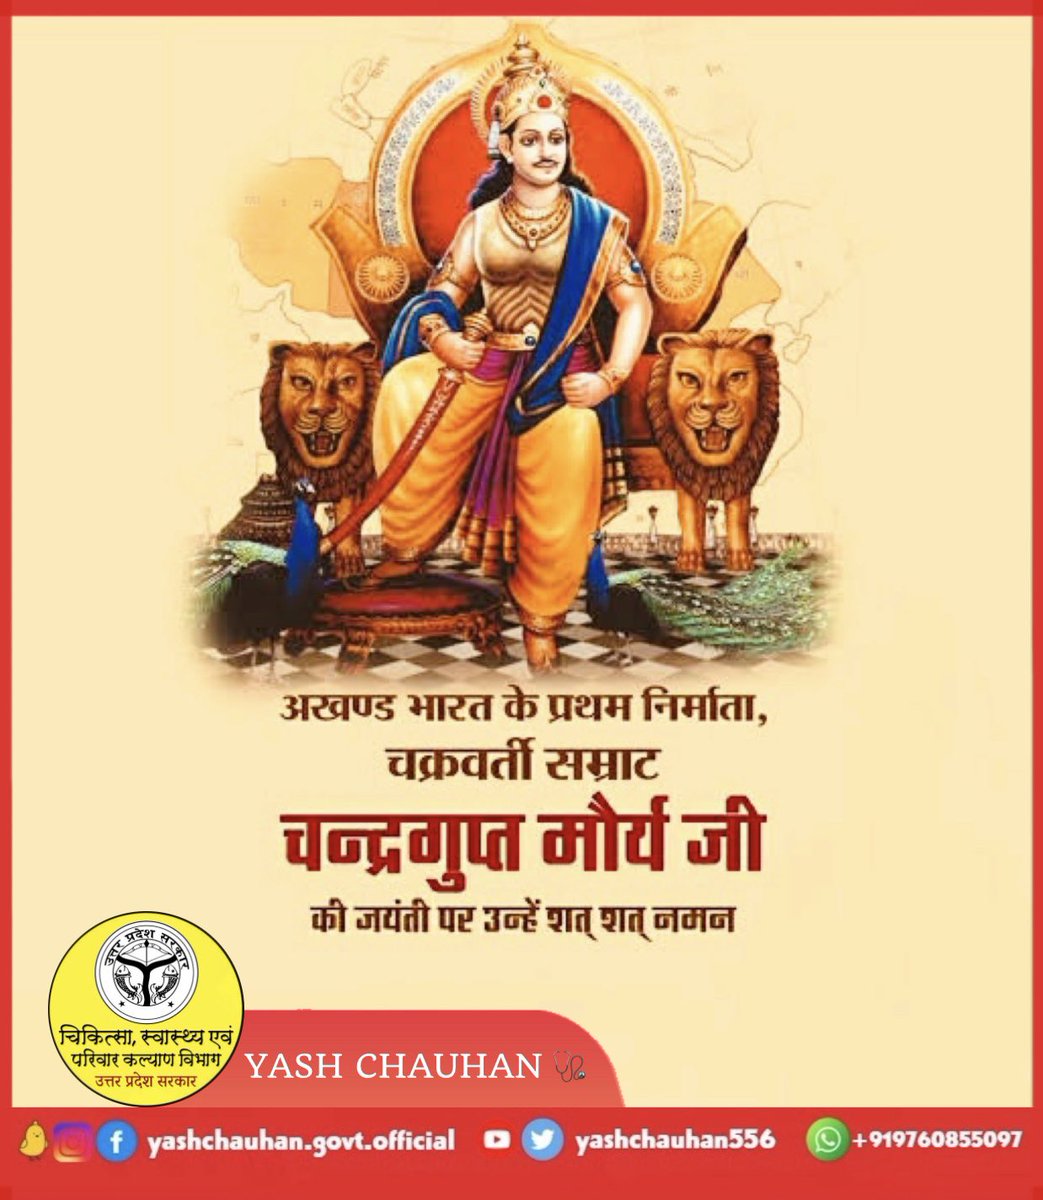 अखण्ड भारत के प्रथम निर्माता चक्रवर्ती सम्राट ‘चंद्रगुप्त मौर्य जी’ की जयंती पर उन्हें शत्-शत् नमन। 🙏
#ChandraguptMaurya